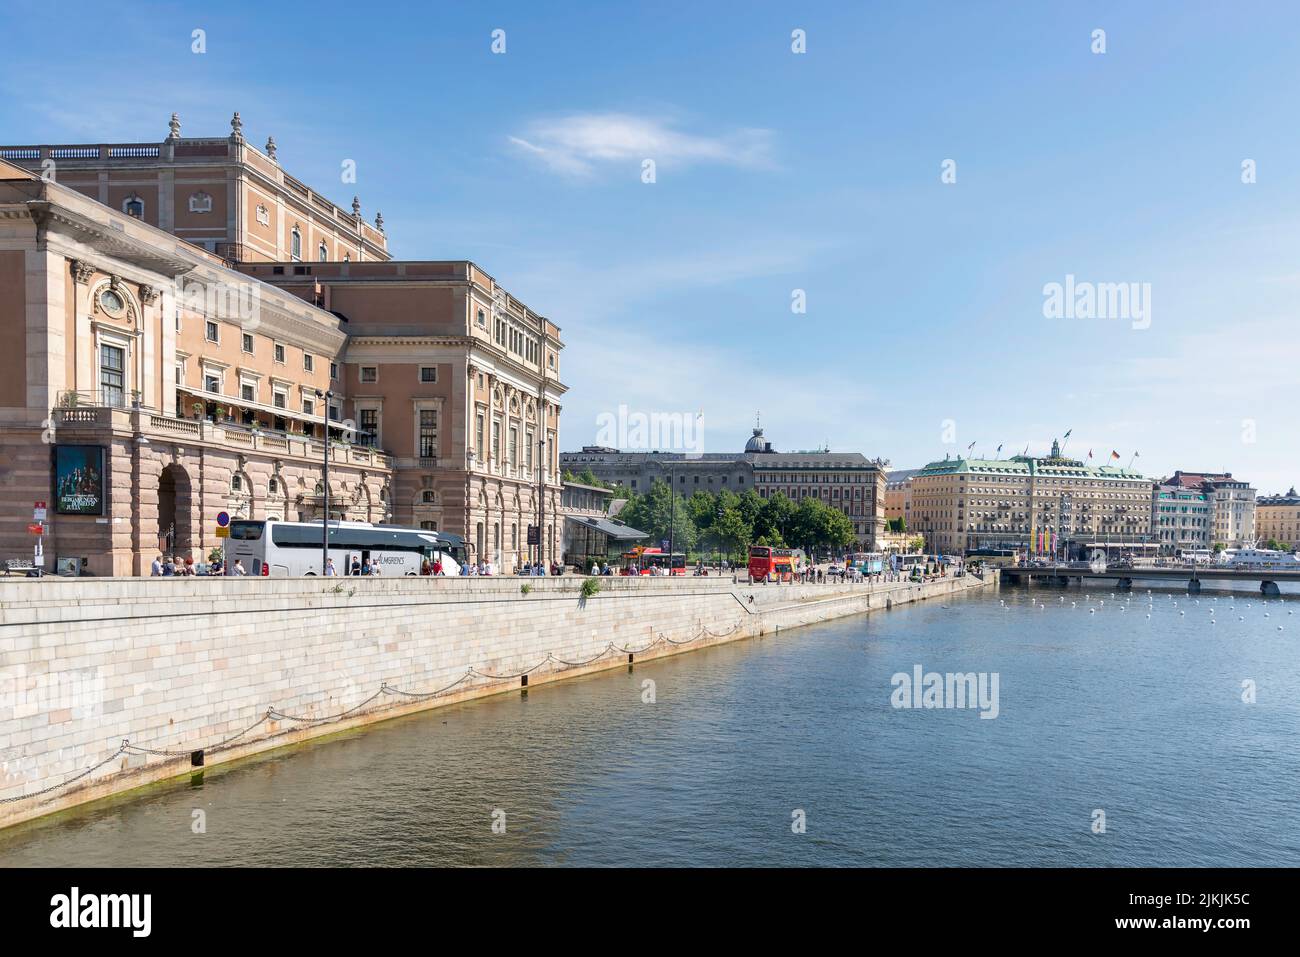 Stockholm, Suède - 26 juin 2022: Opéra royal suédois, suédois: Kungliga Operan, situé dans le centre de la capitale de la Suède, Stockholm, dans le quartier de Norrmalm, en été ensoleillé Banque D'Images